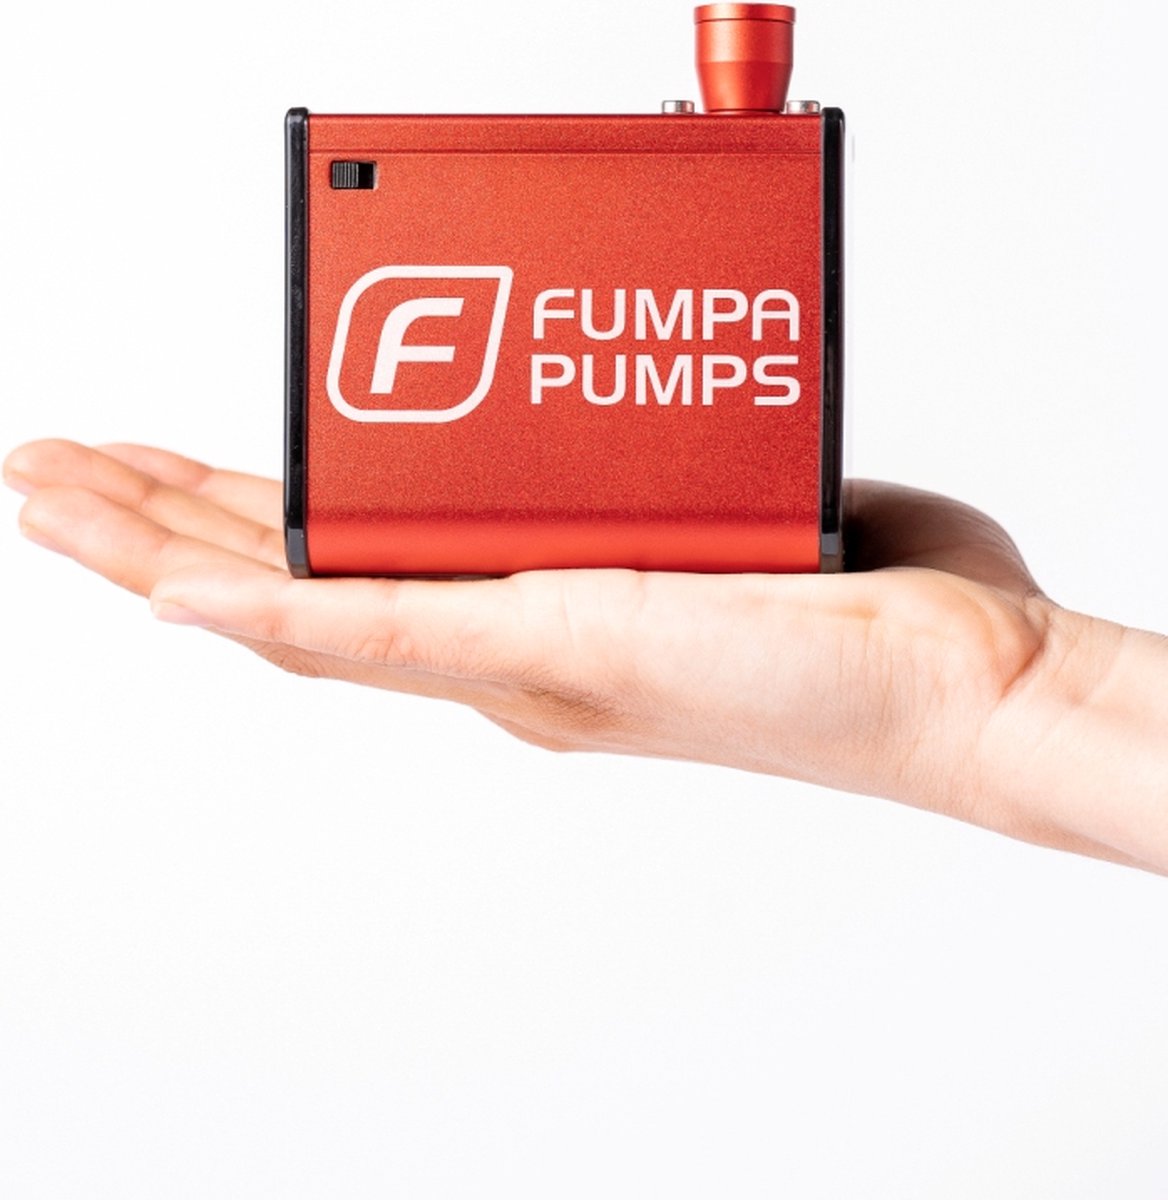 Automatische en Elektrische fietspomp met drukmeter Fumpa Pump